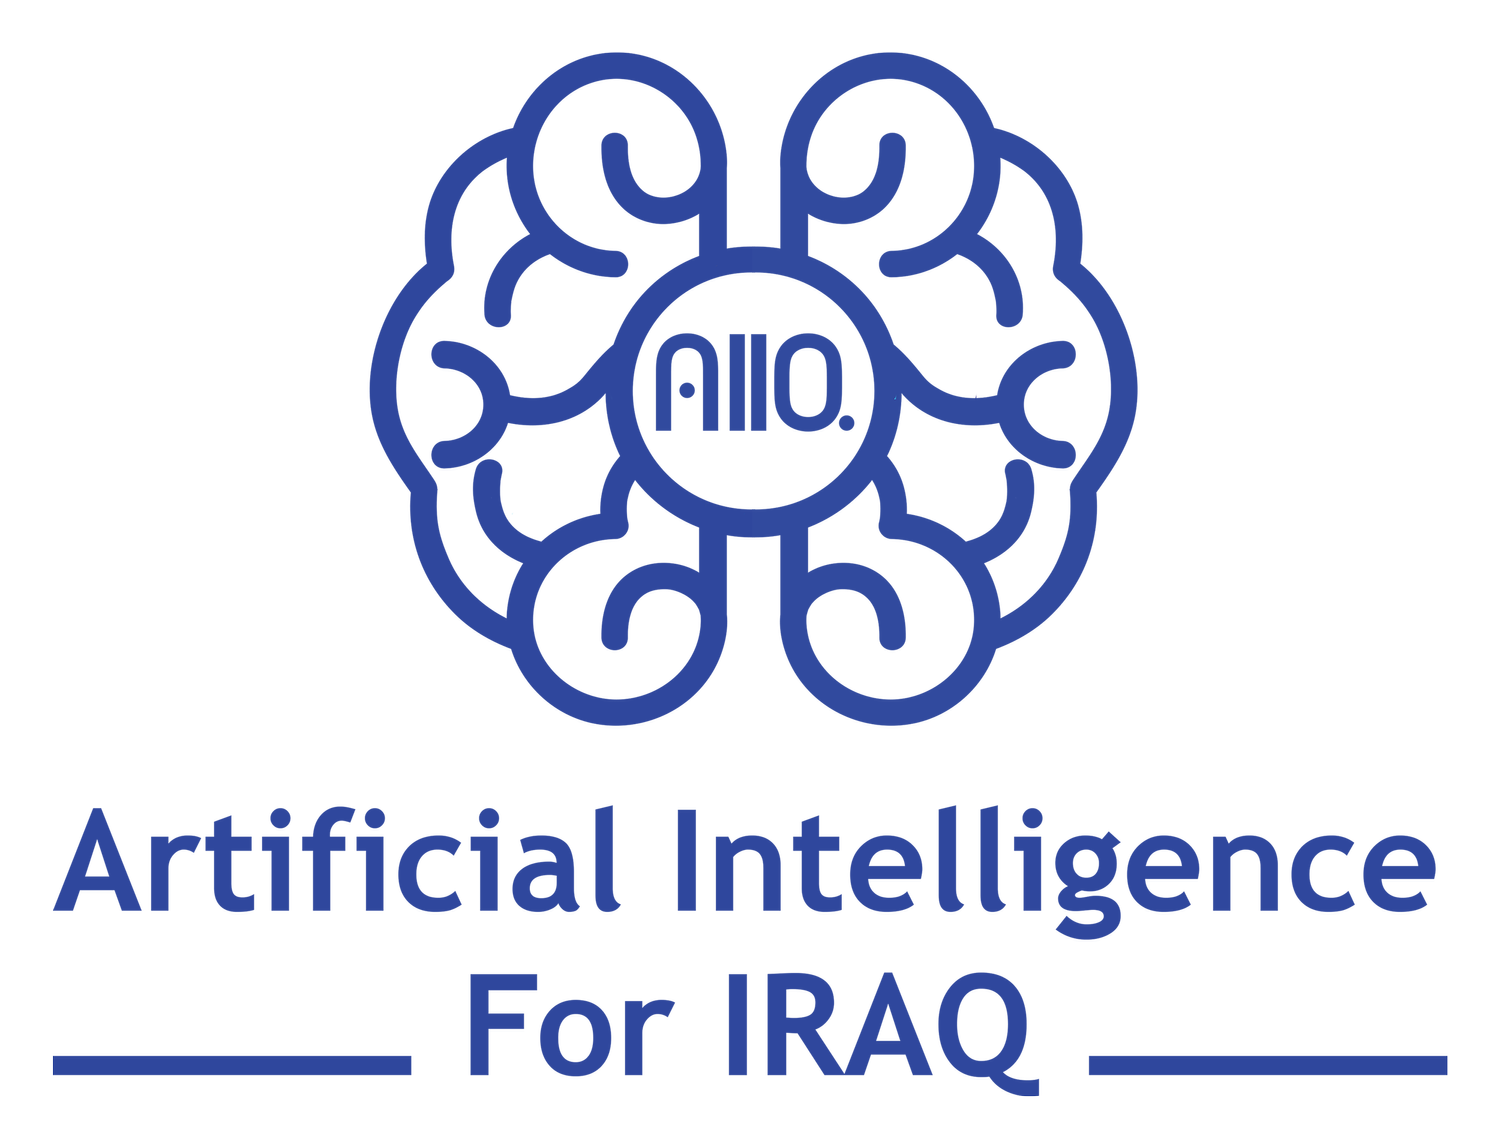 AI For Iraq